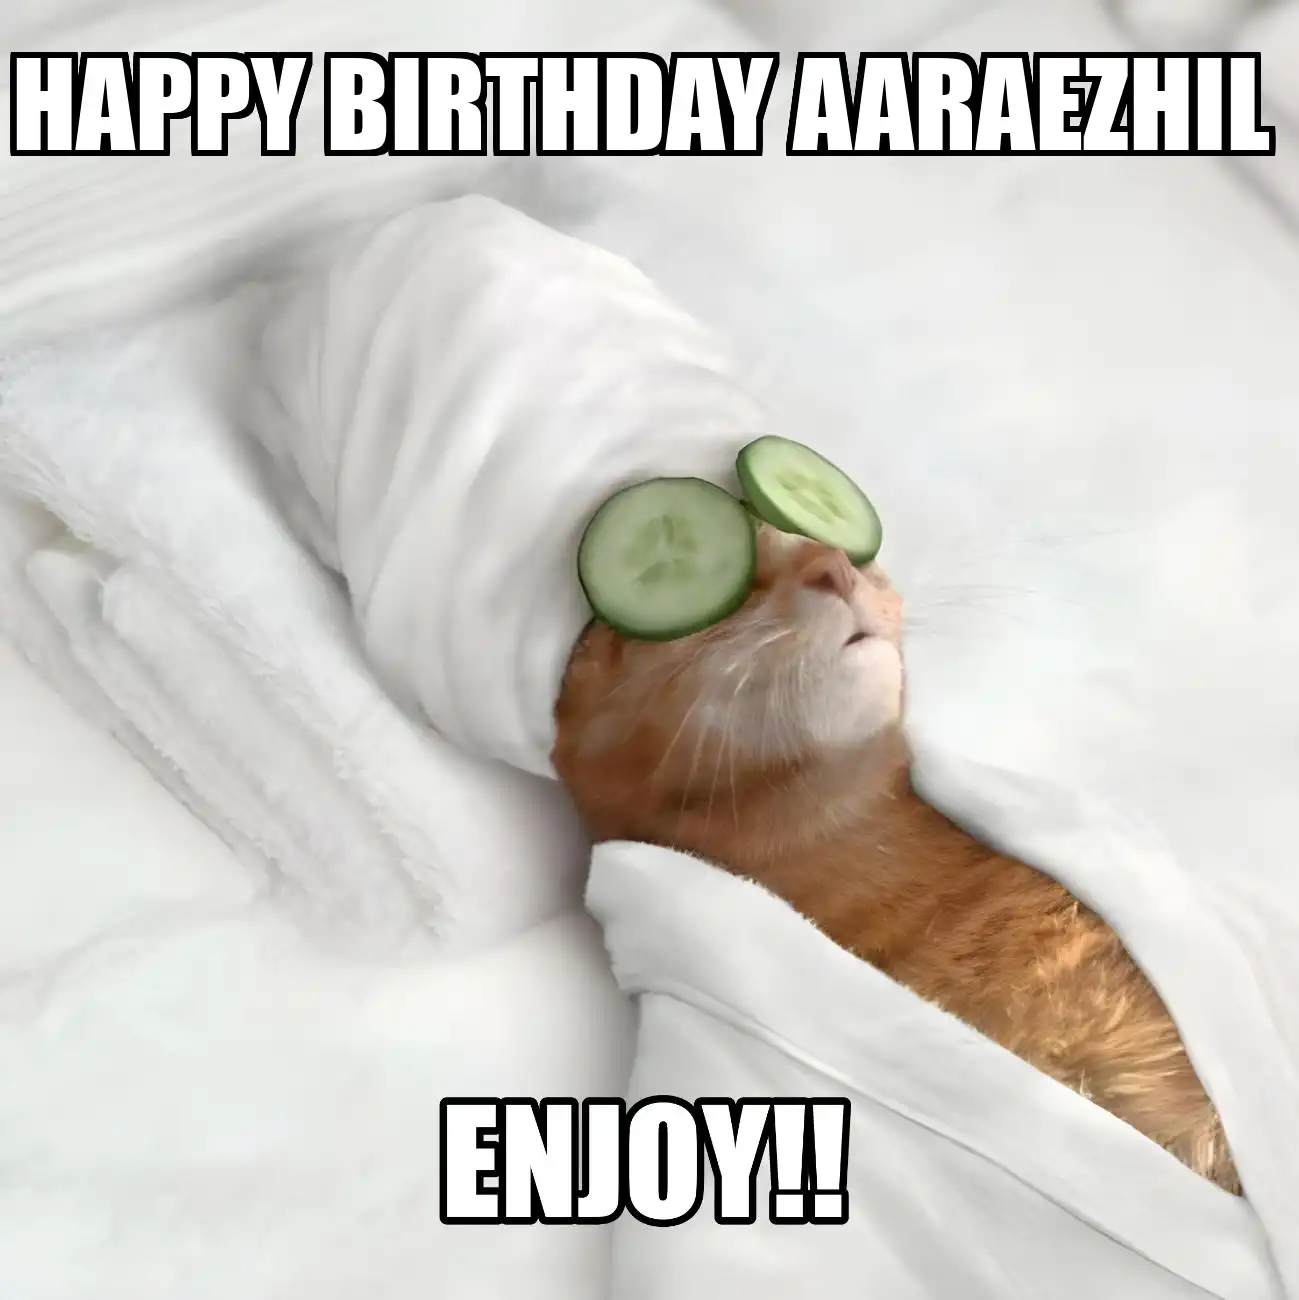 Happy Birthday Aaraezhil Enjoy Cat Meme